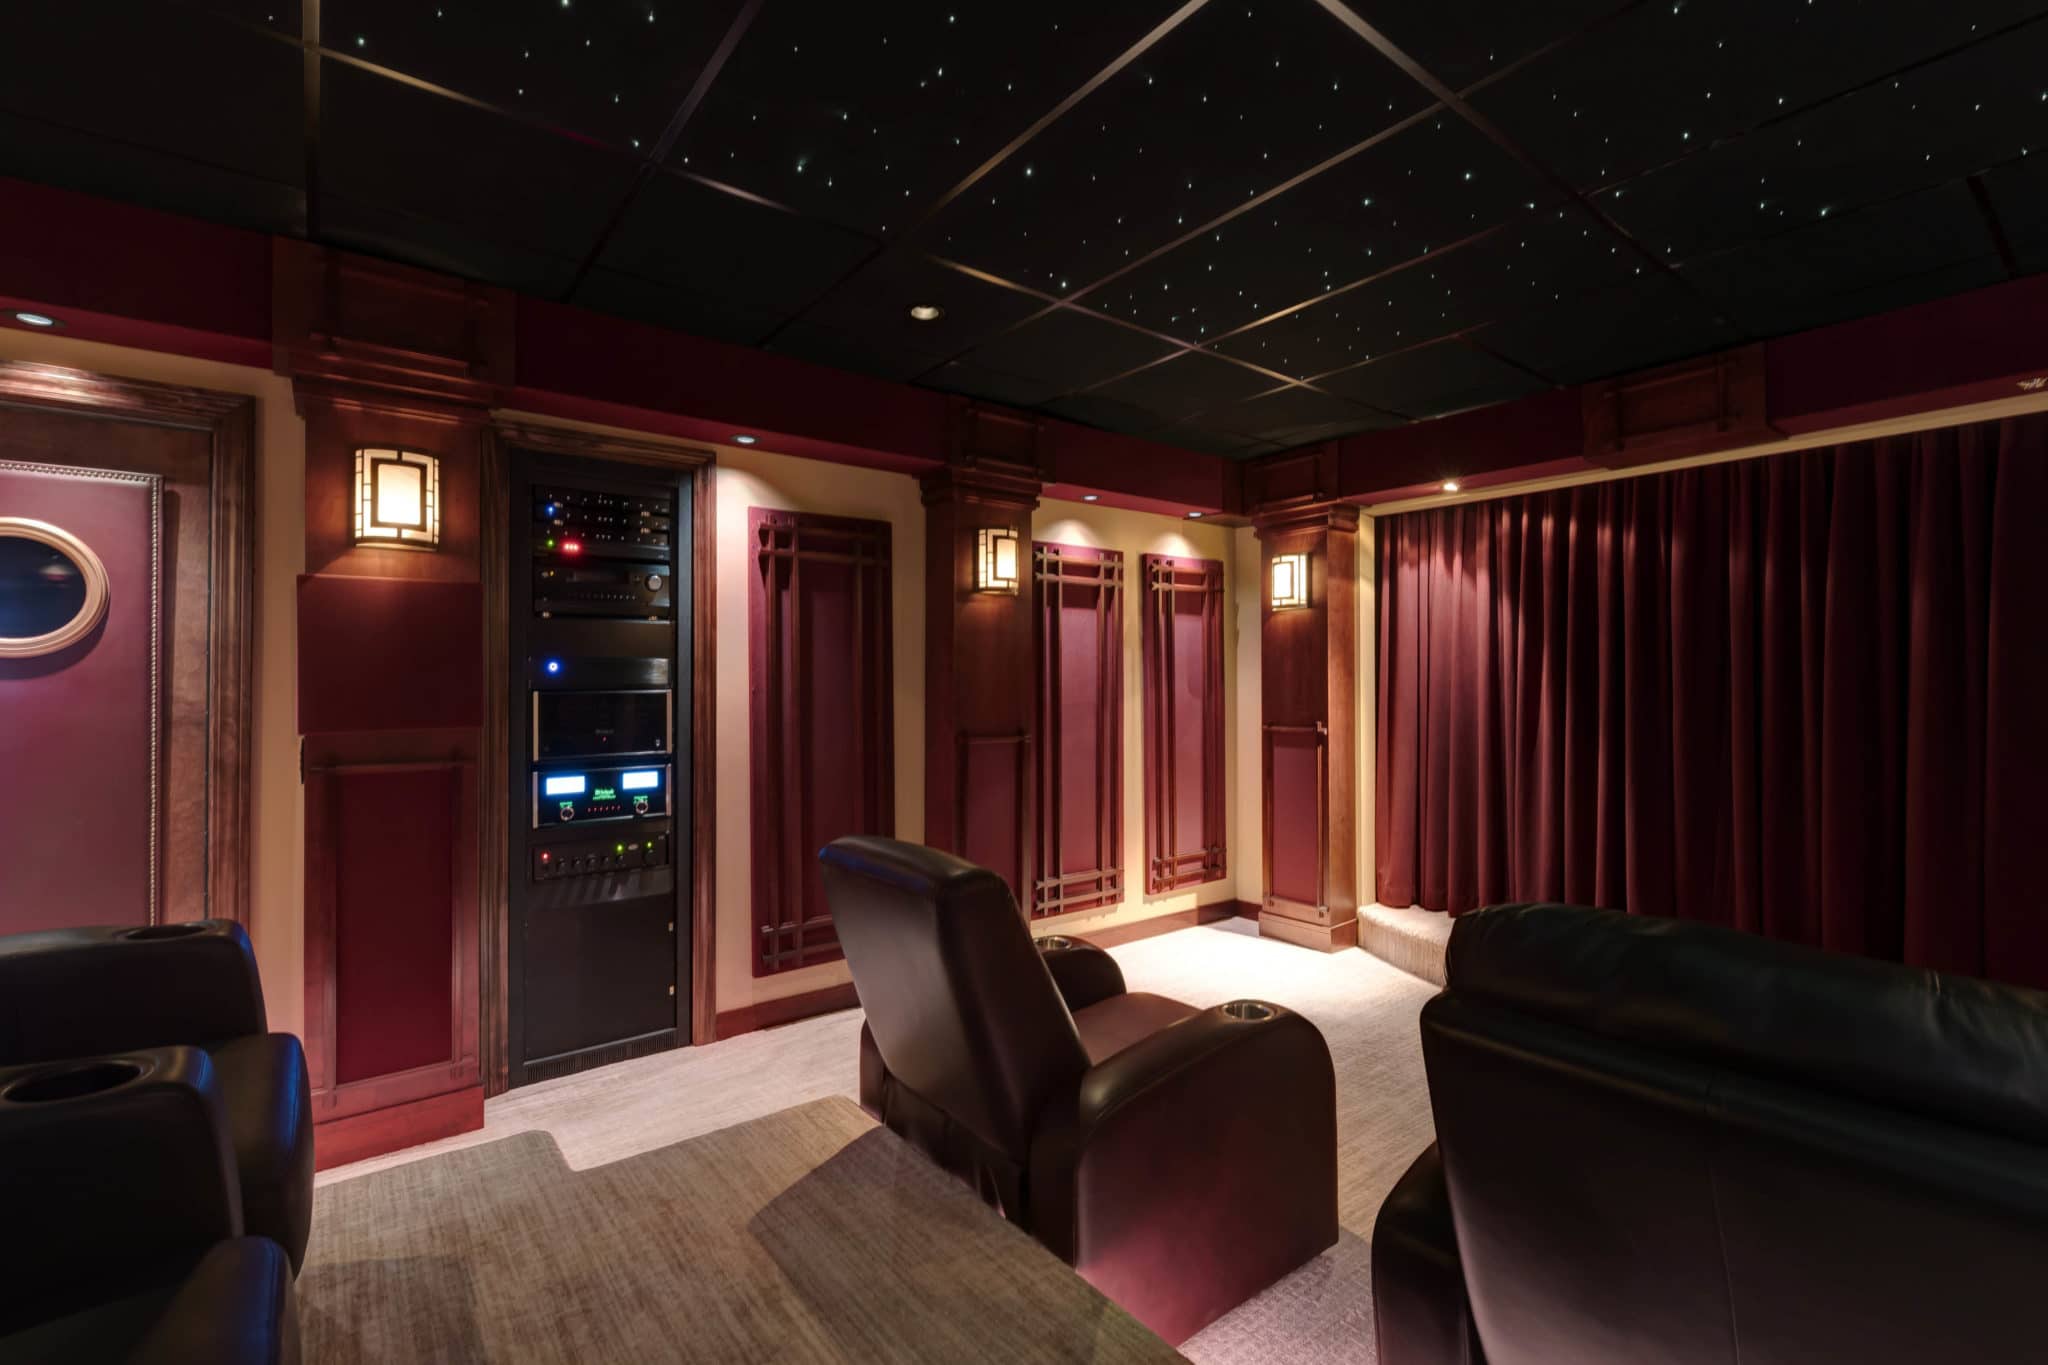 Luxury Home Cinema Room